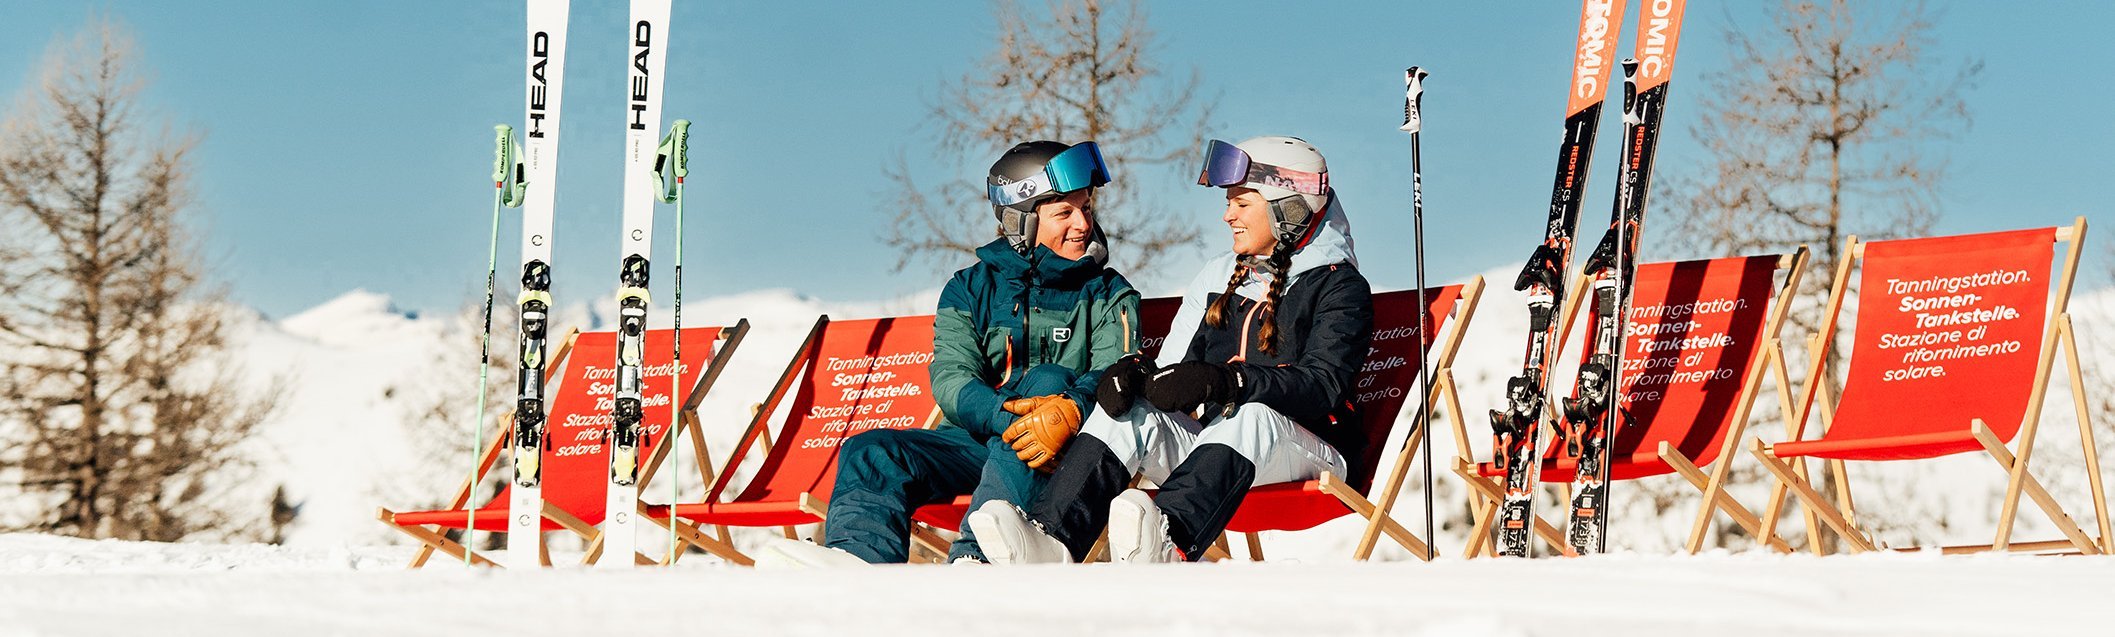 Junges Paar bei den Sonnentankstellen im Skigebiet Bad Kleinkirchheim, Top Winter-Aussicht in den österreichischen Alpen, Pause mit Panorama